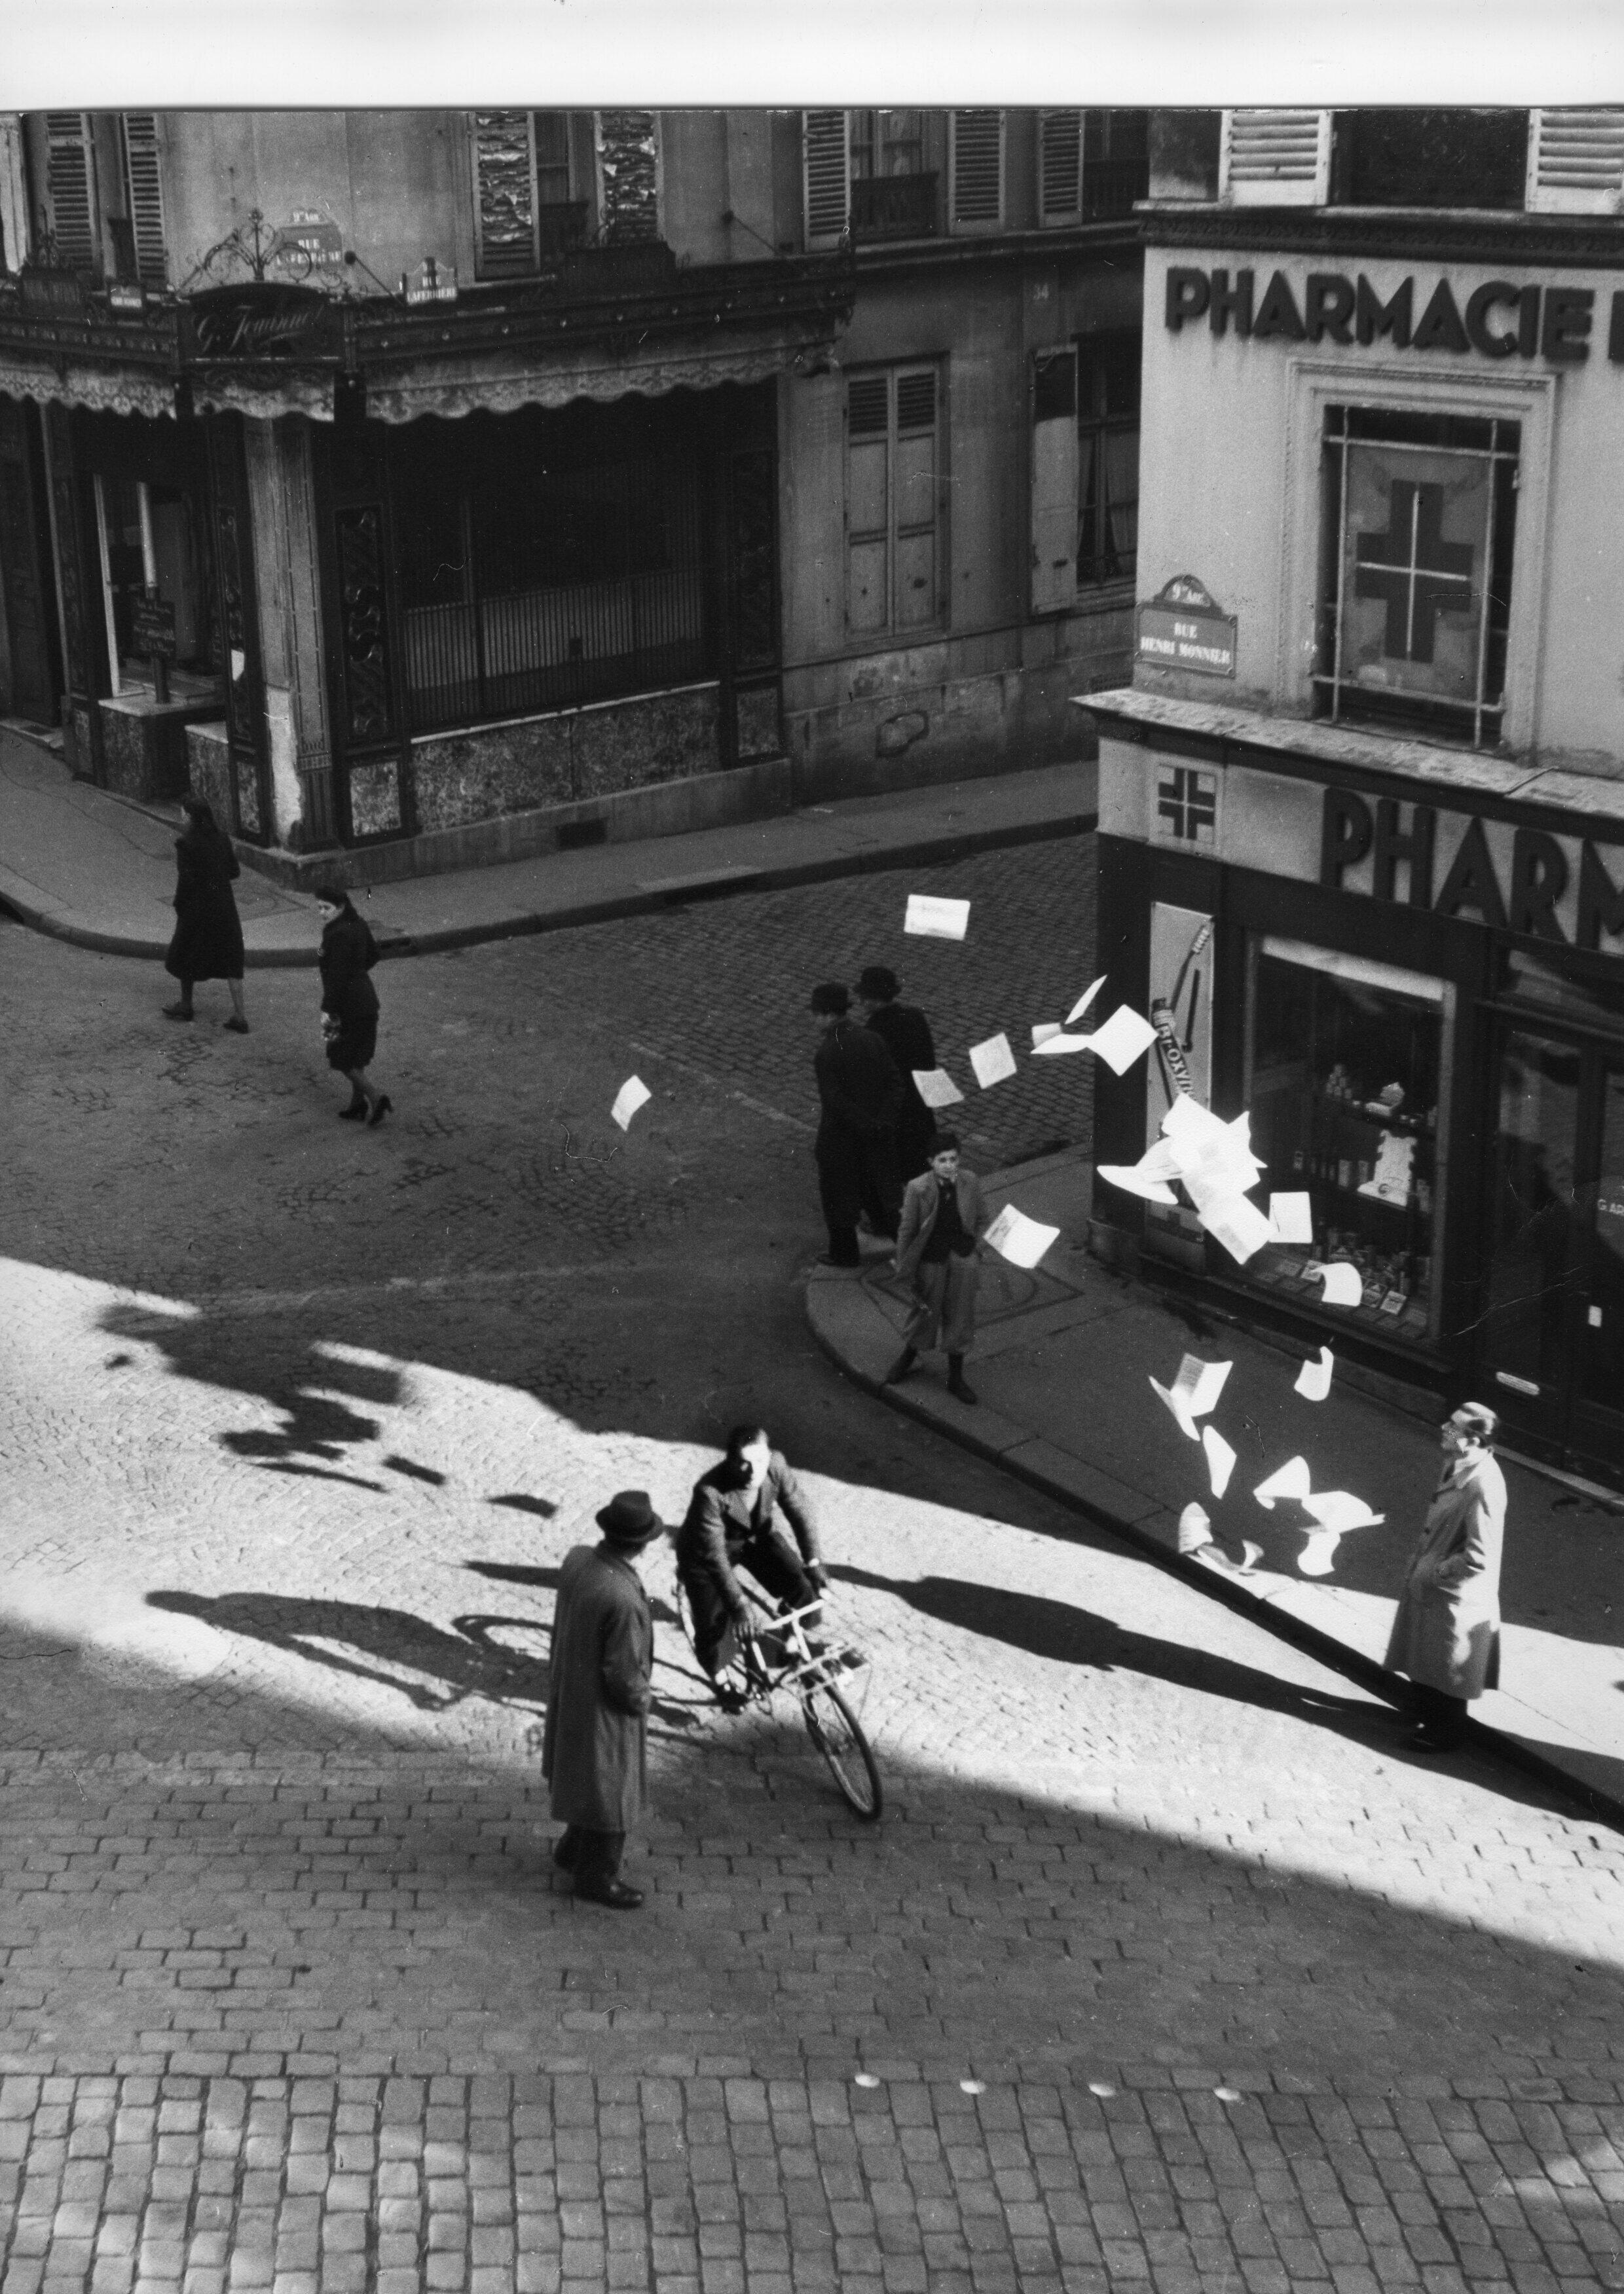 Un combatiente de la resistencia distribuye folletos en la rue Henry Monnier de París como parte de una serie de fotografías reconstruidas por Robert Doisneau en imprentas clandestinas durante la Segunda Guerra Mundial |  Colección AAMRN, Museo Nacional de la Resistencia en Champigny-sur-Marne.